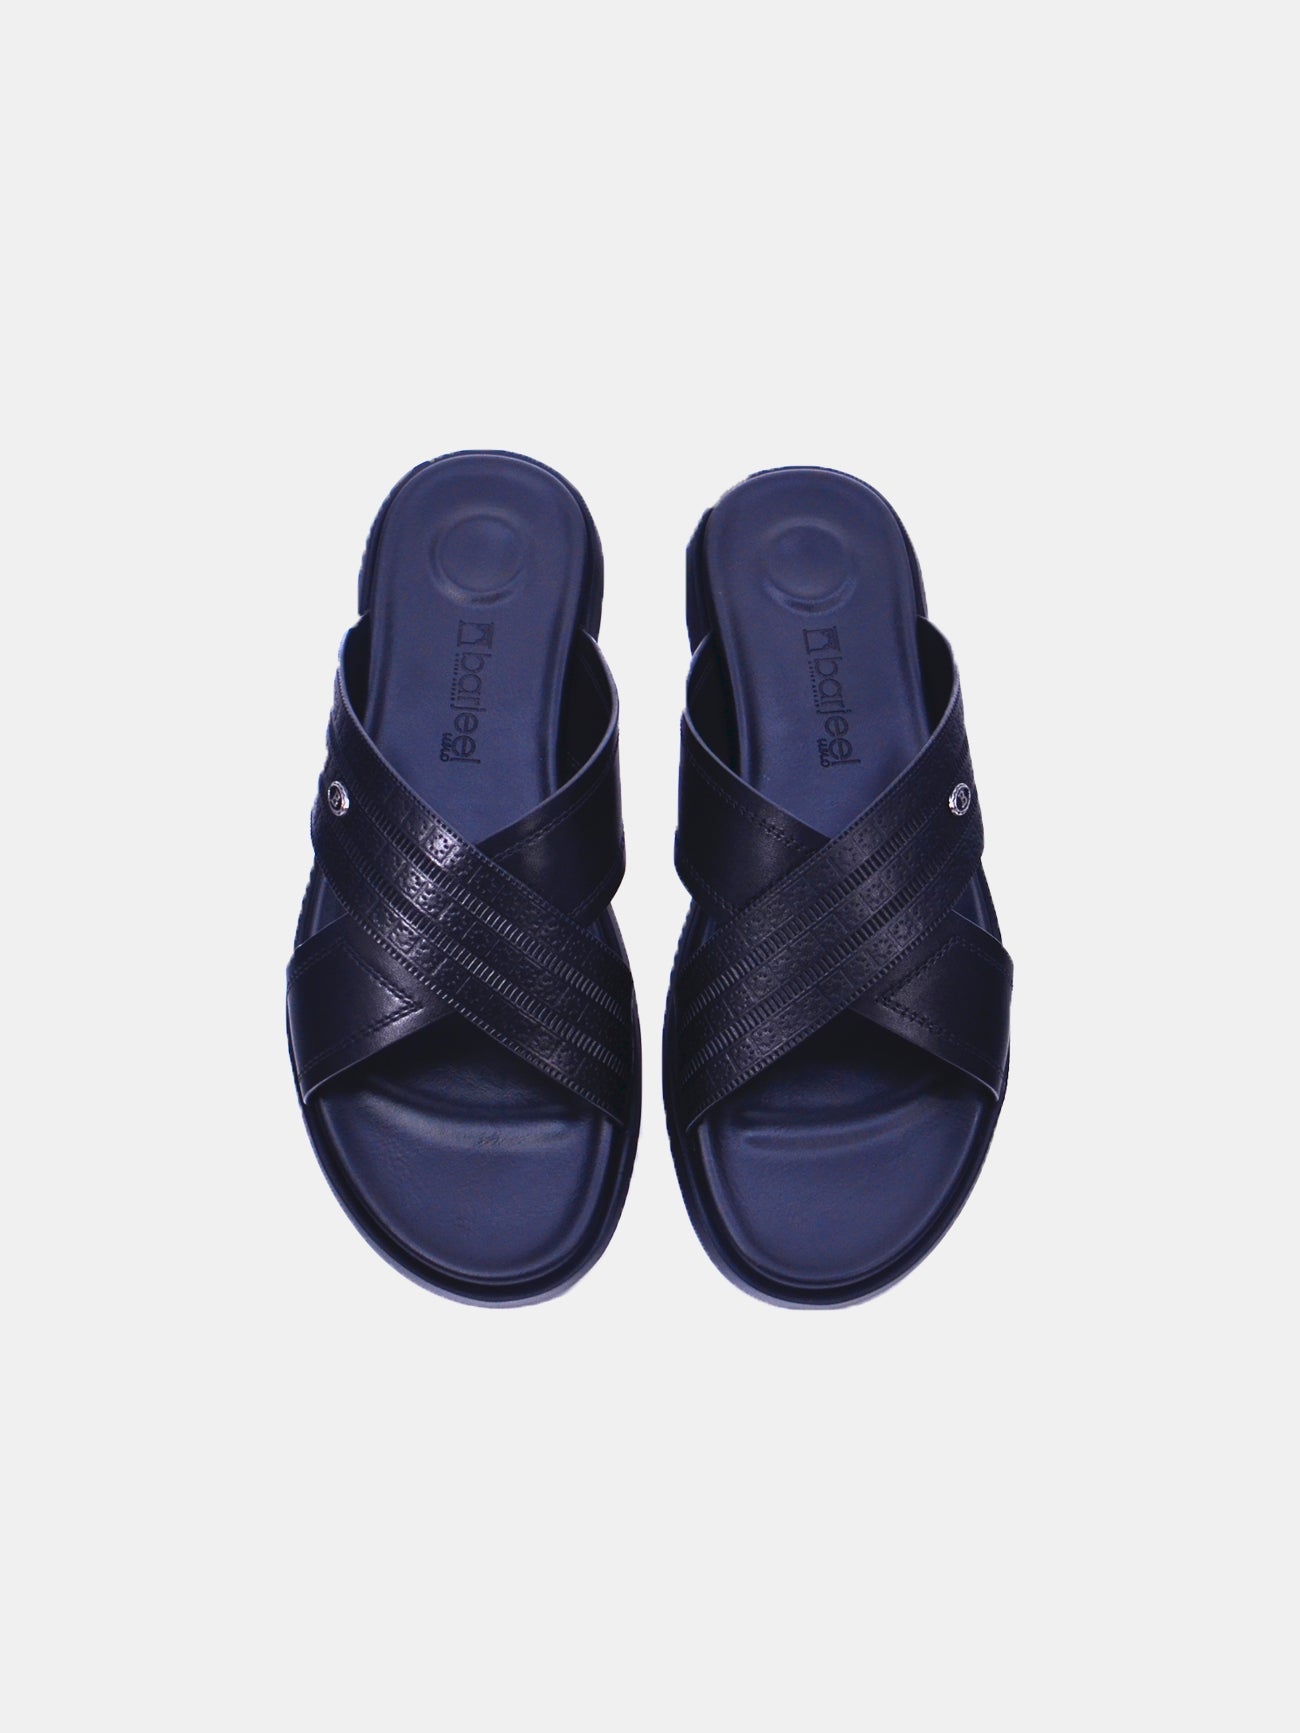 Barjeel Uno 8096-11 Men's Sandals #color_Black